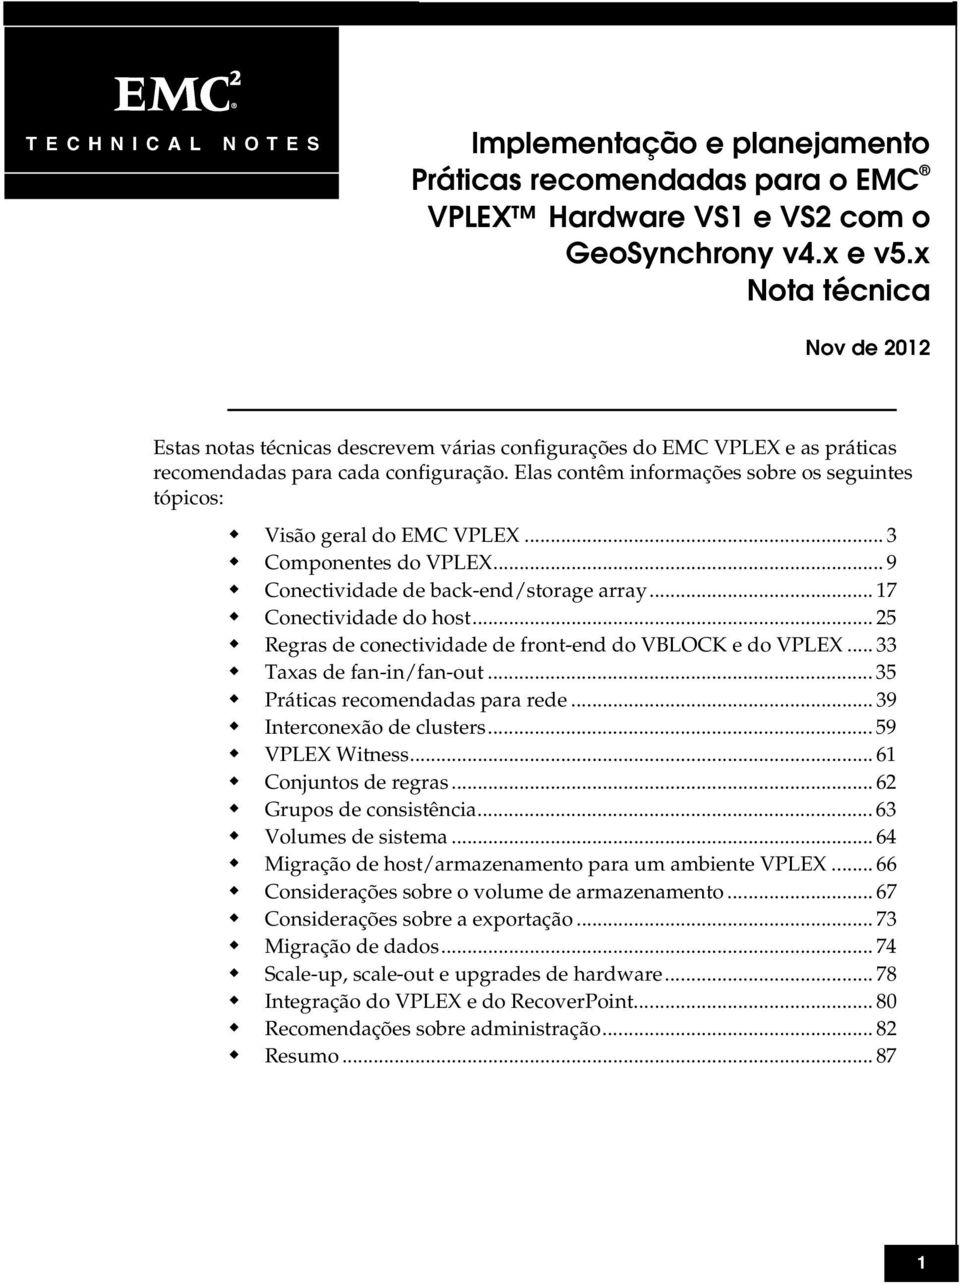 Elas contêm informações sobre os seguintes tópicos: Visão geral do EMC VPLEX... 3 Componentes do VPLEX... 9 Conectividade de back-end/storage array... 17 Conectividade do host.